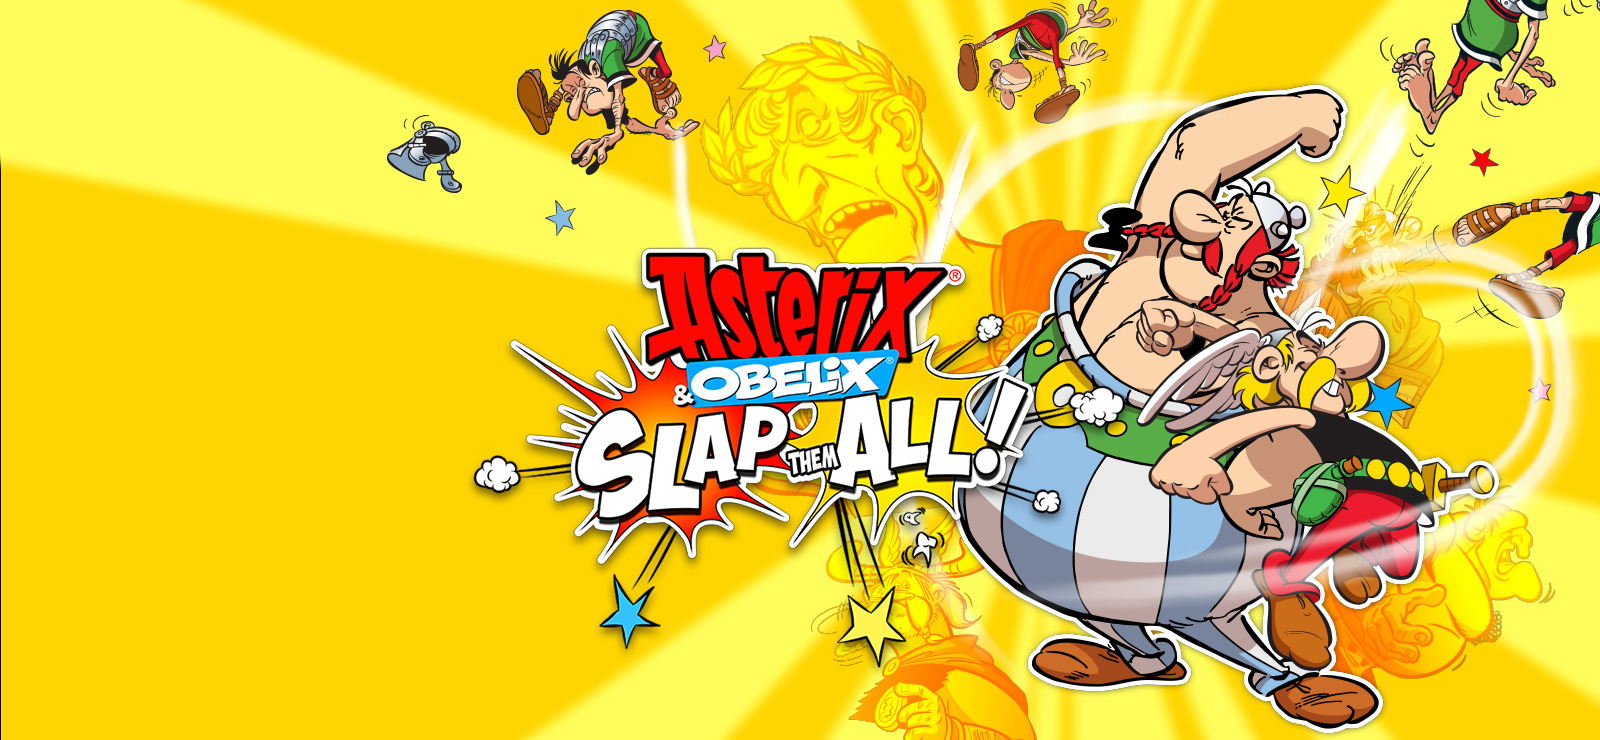 Комбо героев. Asterix & Obelix: slap them all!. Игра Asterix PC Cover.